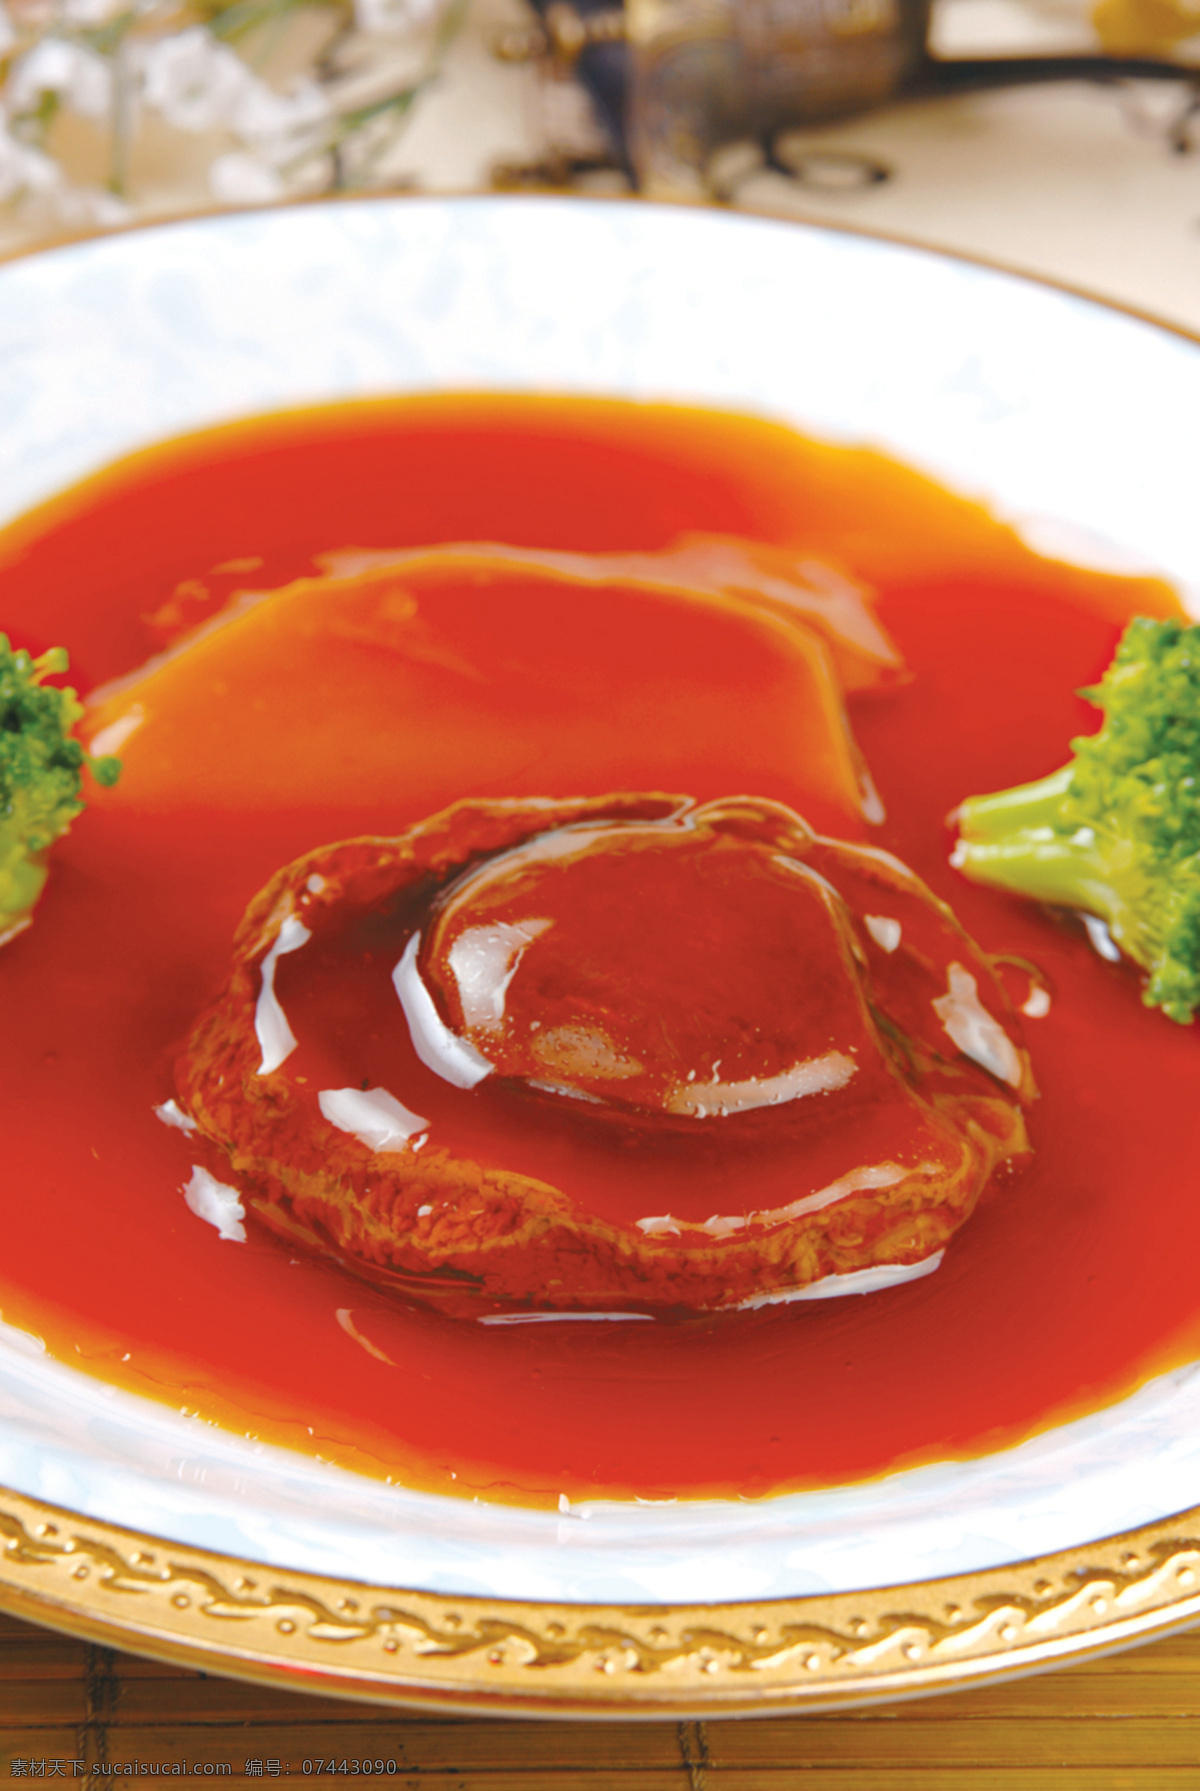 白灵菇扣鲍鱼 美食 传统美食 餐饮美食 高清菜谱用图